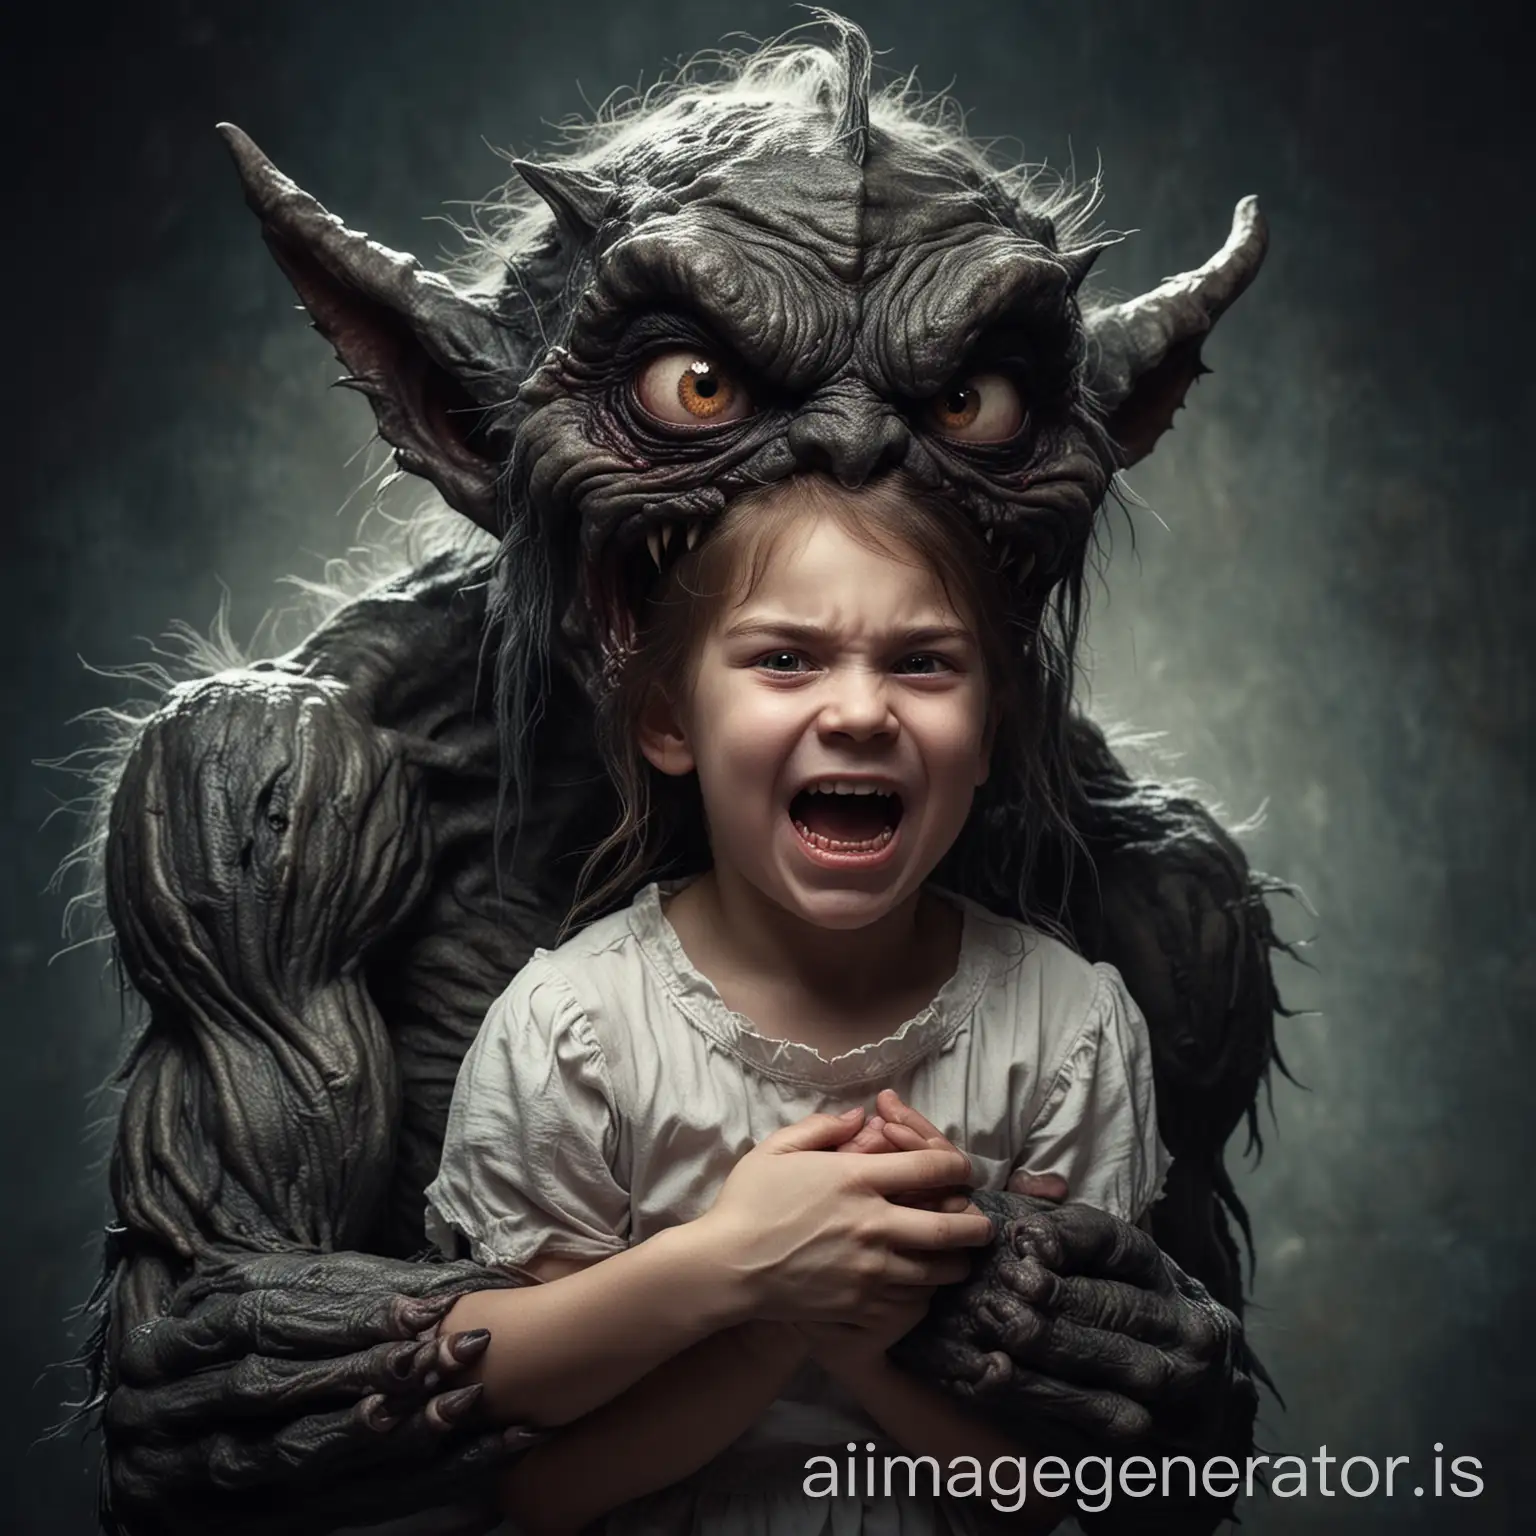 Terrifying-Nightmare-Little-Girl-Held-by-Giant-Creepy-Demon-Monster